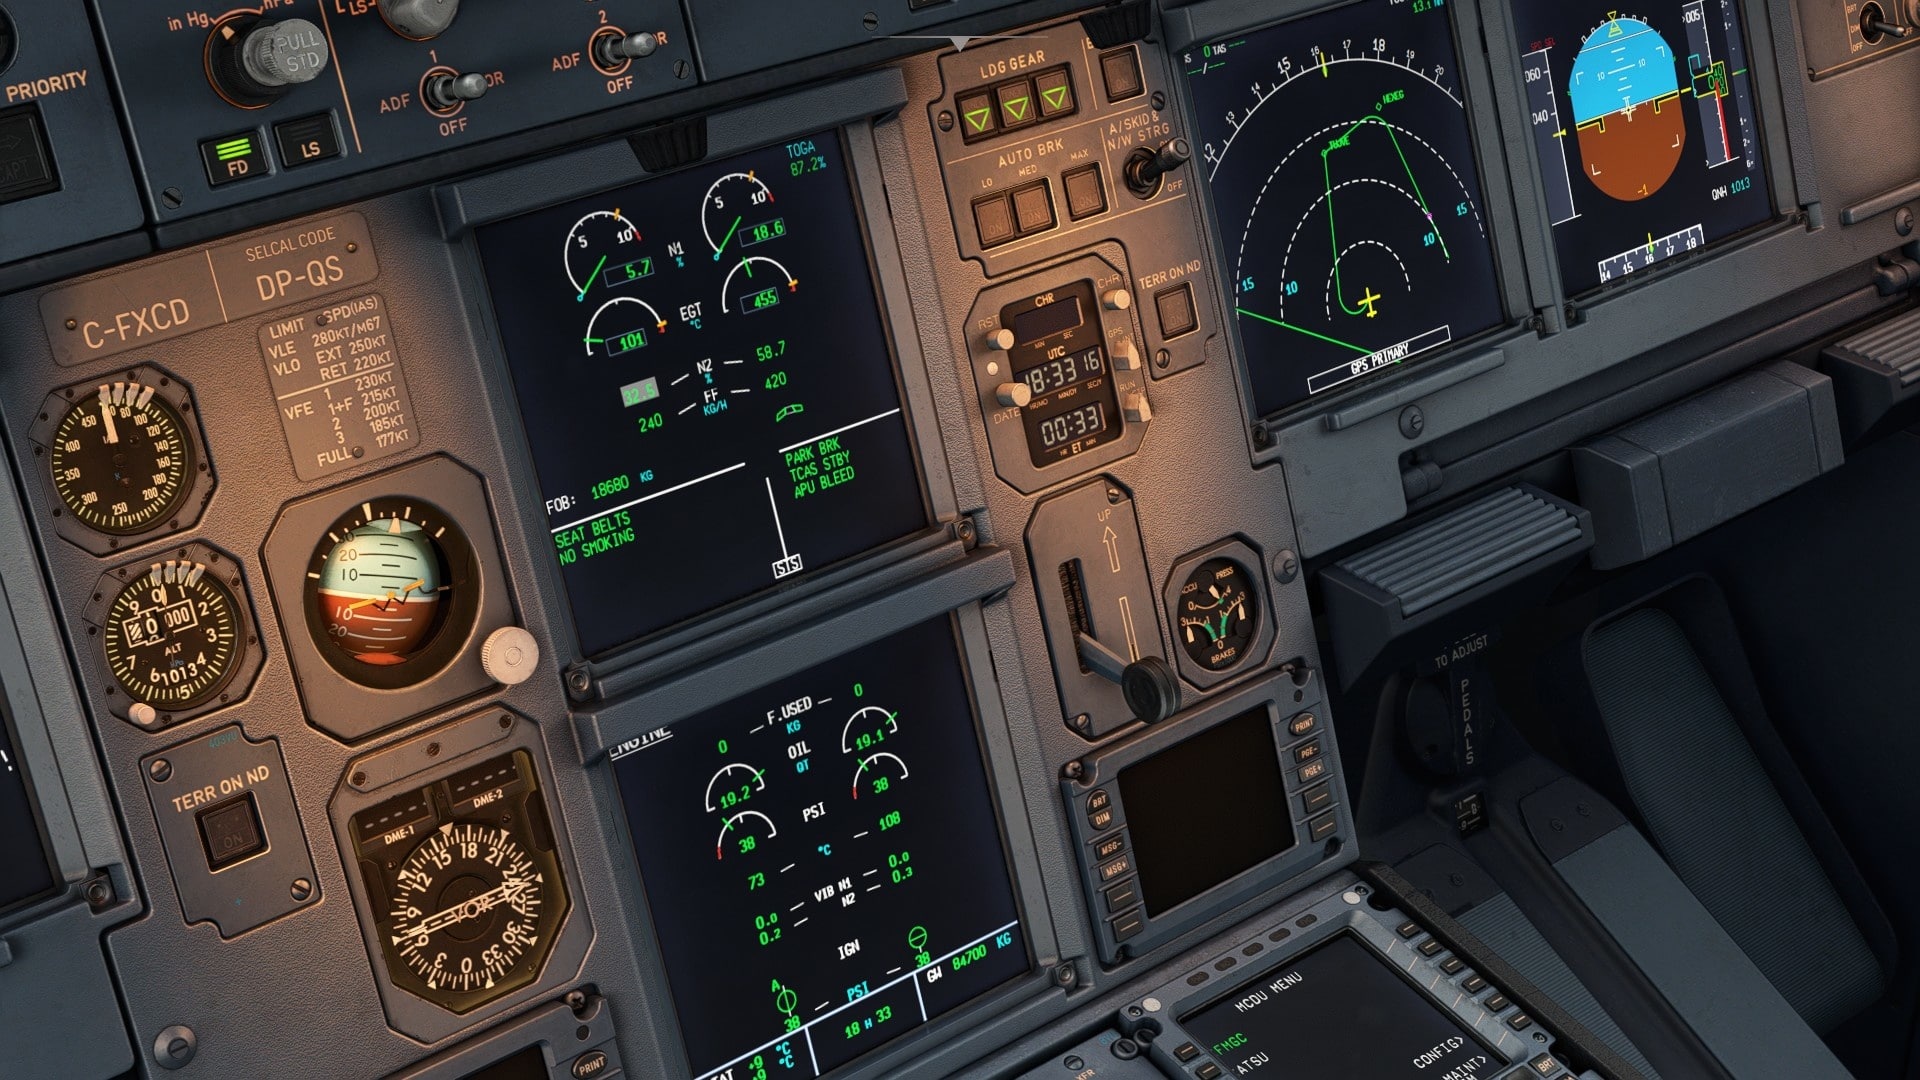  De cockpit ziet er grafisch zeer realistisch en bijna tastbaar uit. De displays kunnen optioneel worden gerenderd door de interne grafische chip van uw (Intel) processor, die de eigenlijke grafische kaart ontlast.)